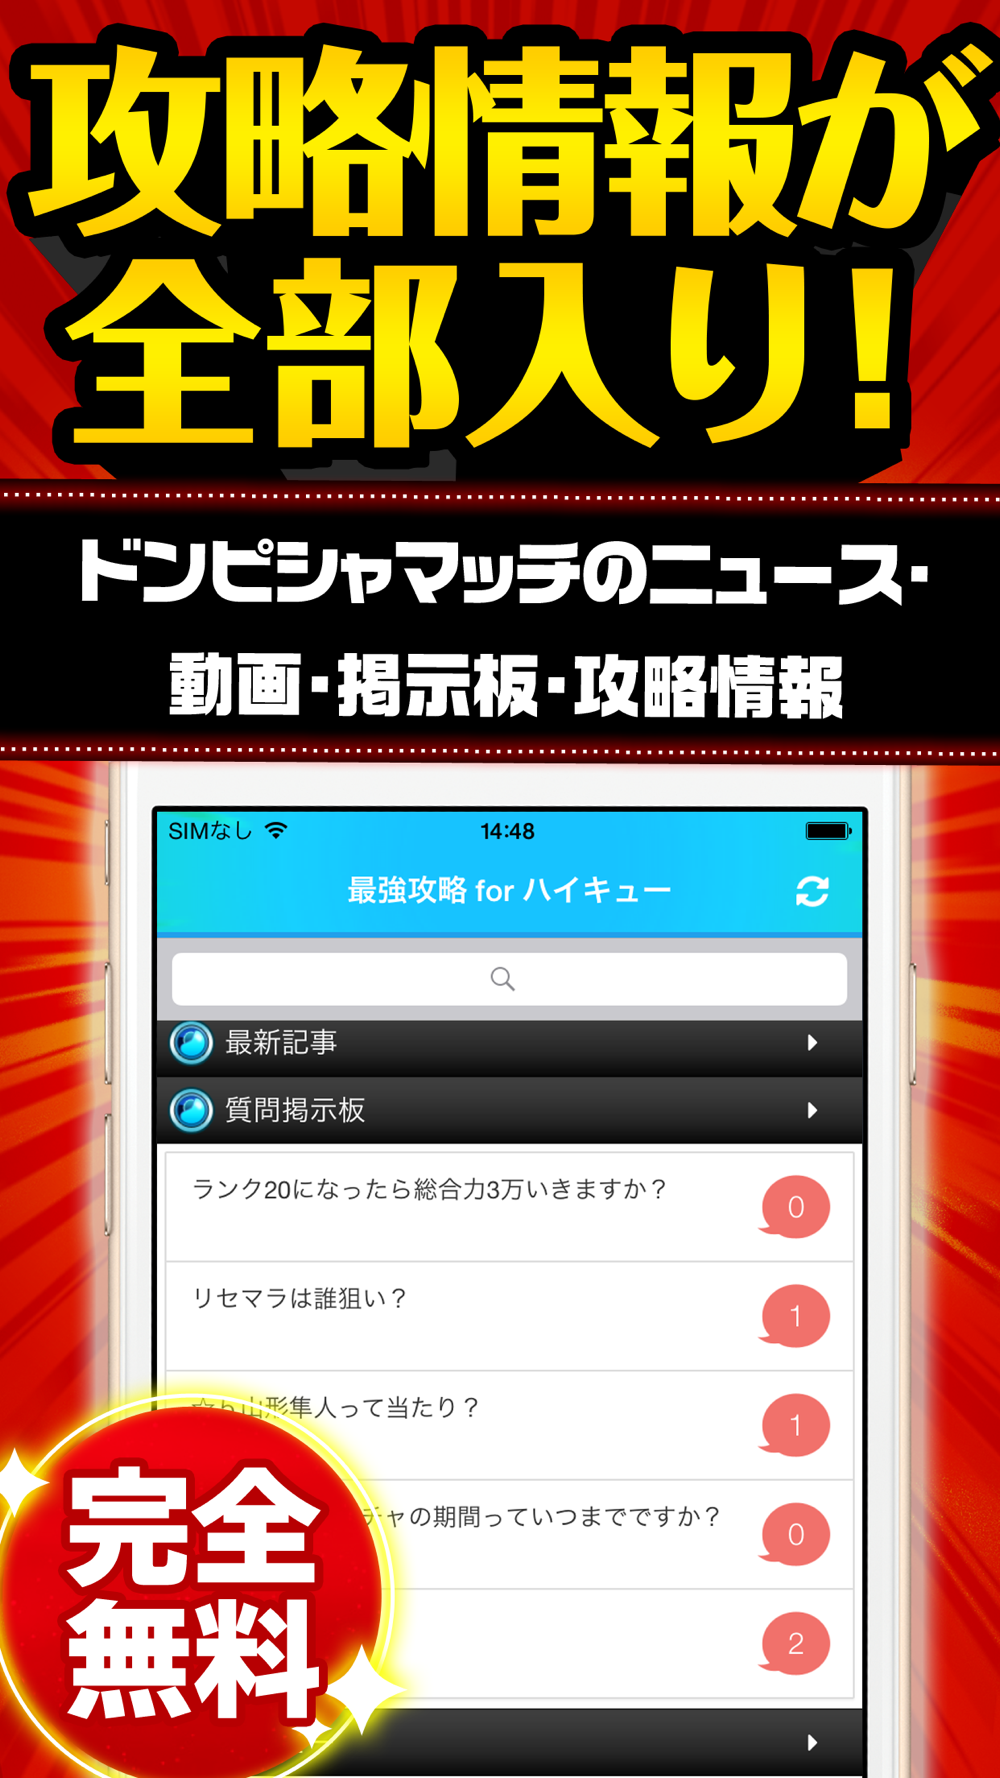 ハイキュー最強攻略 For ハイキュードンピシャマッチ Free Download App For Iphone Steprimo Com